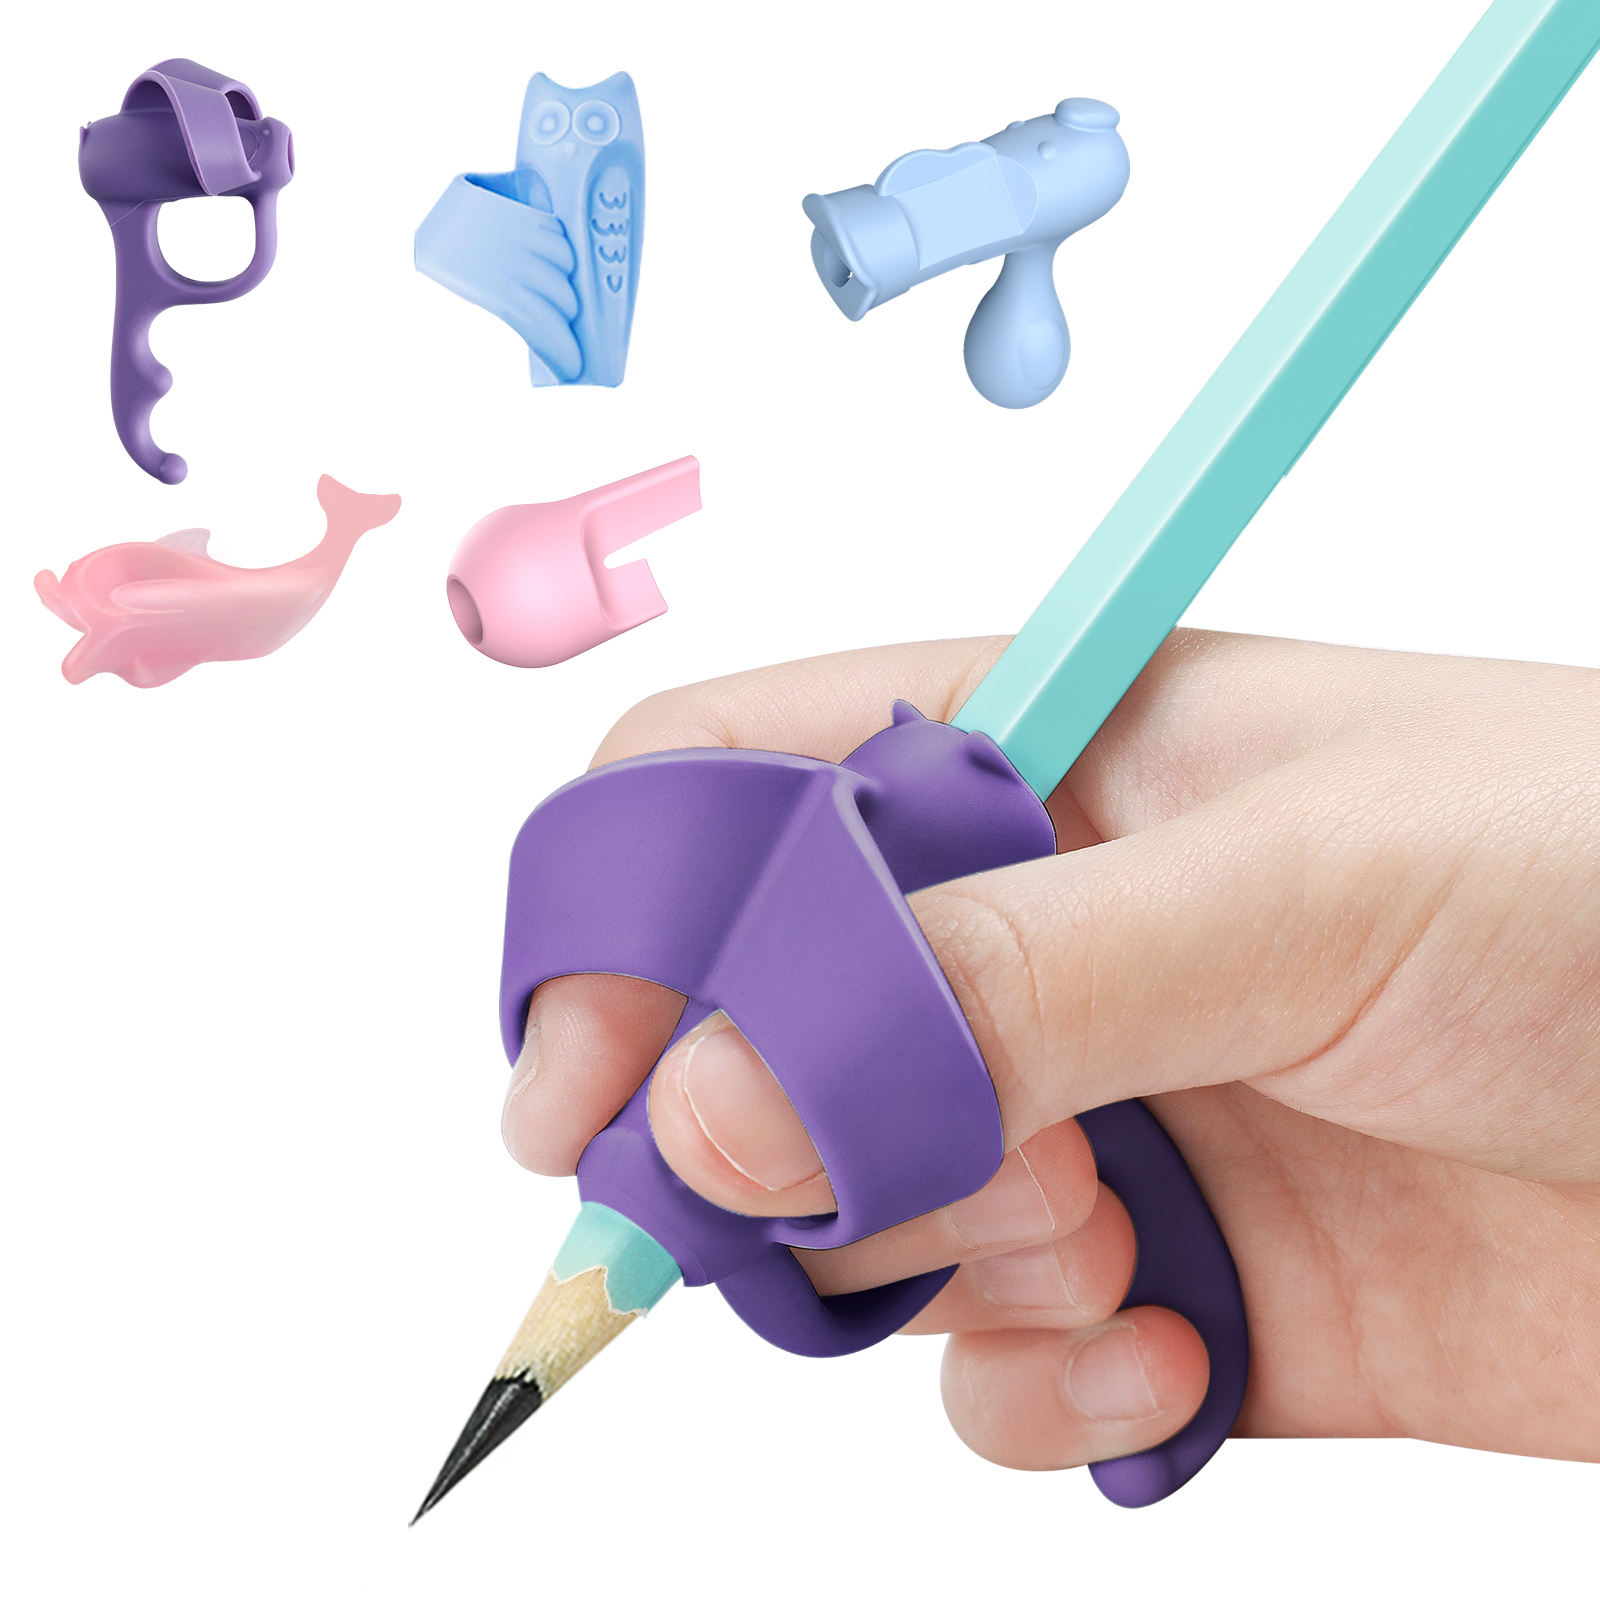 5 단계 연필 핸들 그립 새로운 디자인 쓰기 통합 자세 보조 펜 손가락 홀더 운동 조정 쓰기 핑크 블루